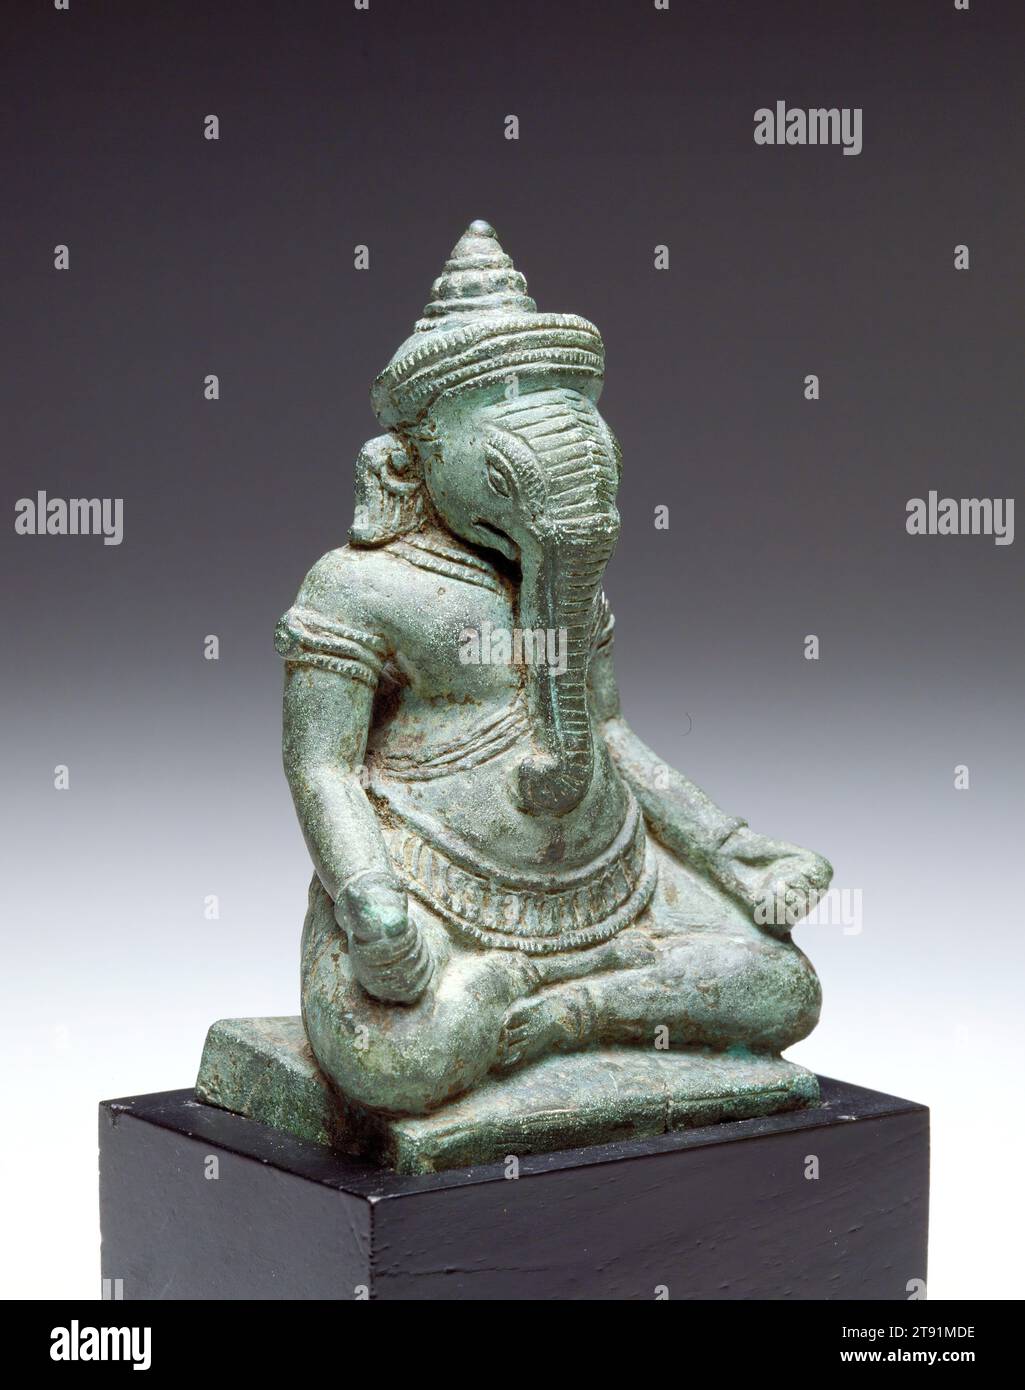 Ganesha, 12e-13e siècle, 4 x 2 3/4 x 1 15/16 po. (10,16 x 6,99 x 4,92 cm), Bronze, Cambodge, 12e-13e siècle, Dieu de la sagesse et de la suppression des obstacles visibles et invisibles, la Ganesha à tête d'éléphant est invoquée au début de toute nouvelle entreprise ou voyage. Comme on pensait que l'esprit de la divinité résidait à son image, cette petite statue en bronze constituerait ainsi un compagnon de voyage parfait, guidant son propriétaire vers des décisions sages et des chemins sûrs Banque D'Images